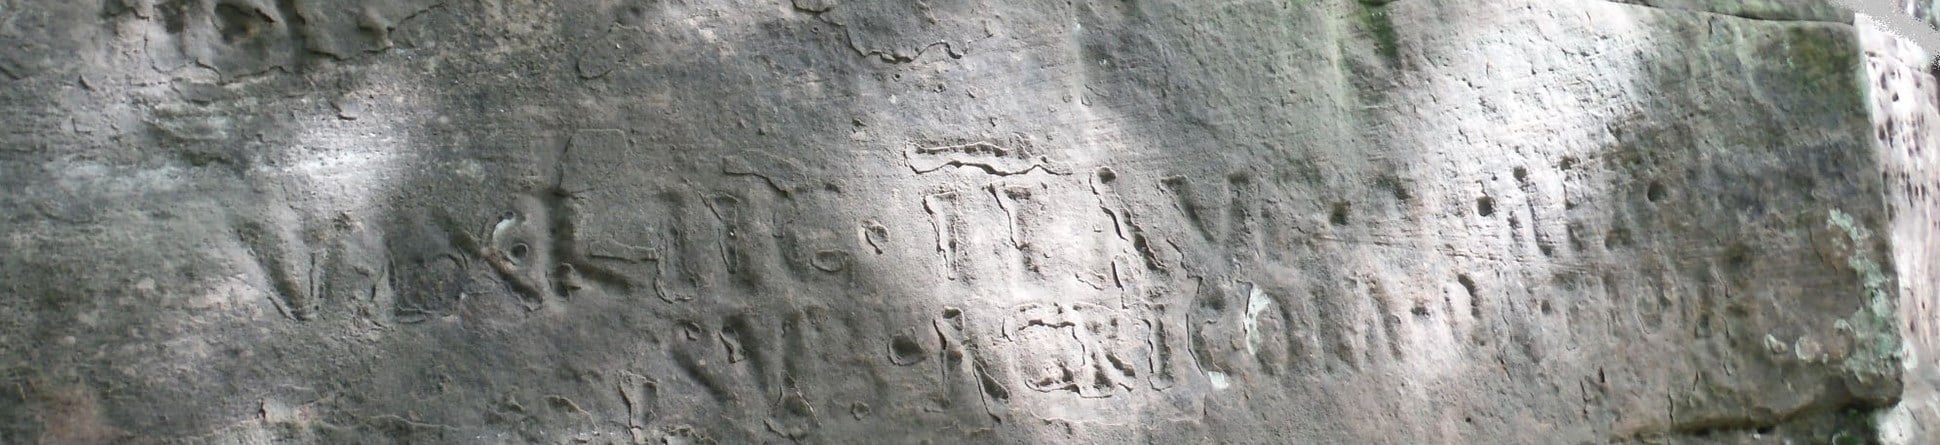 Roman graffiti left at quarry in Gelt, Cumbria